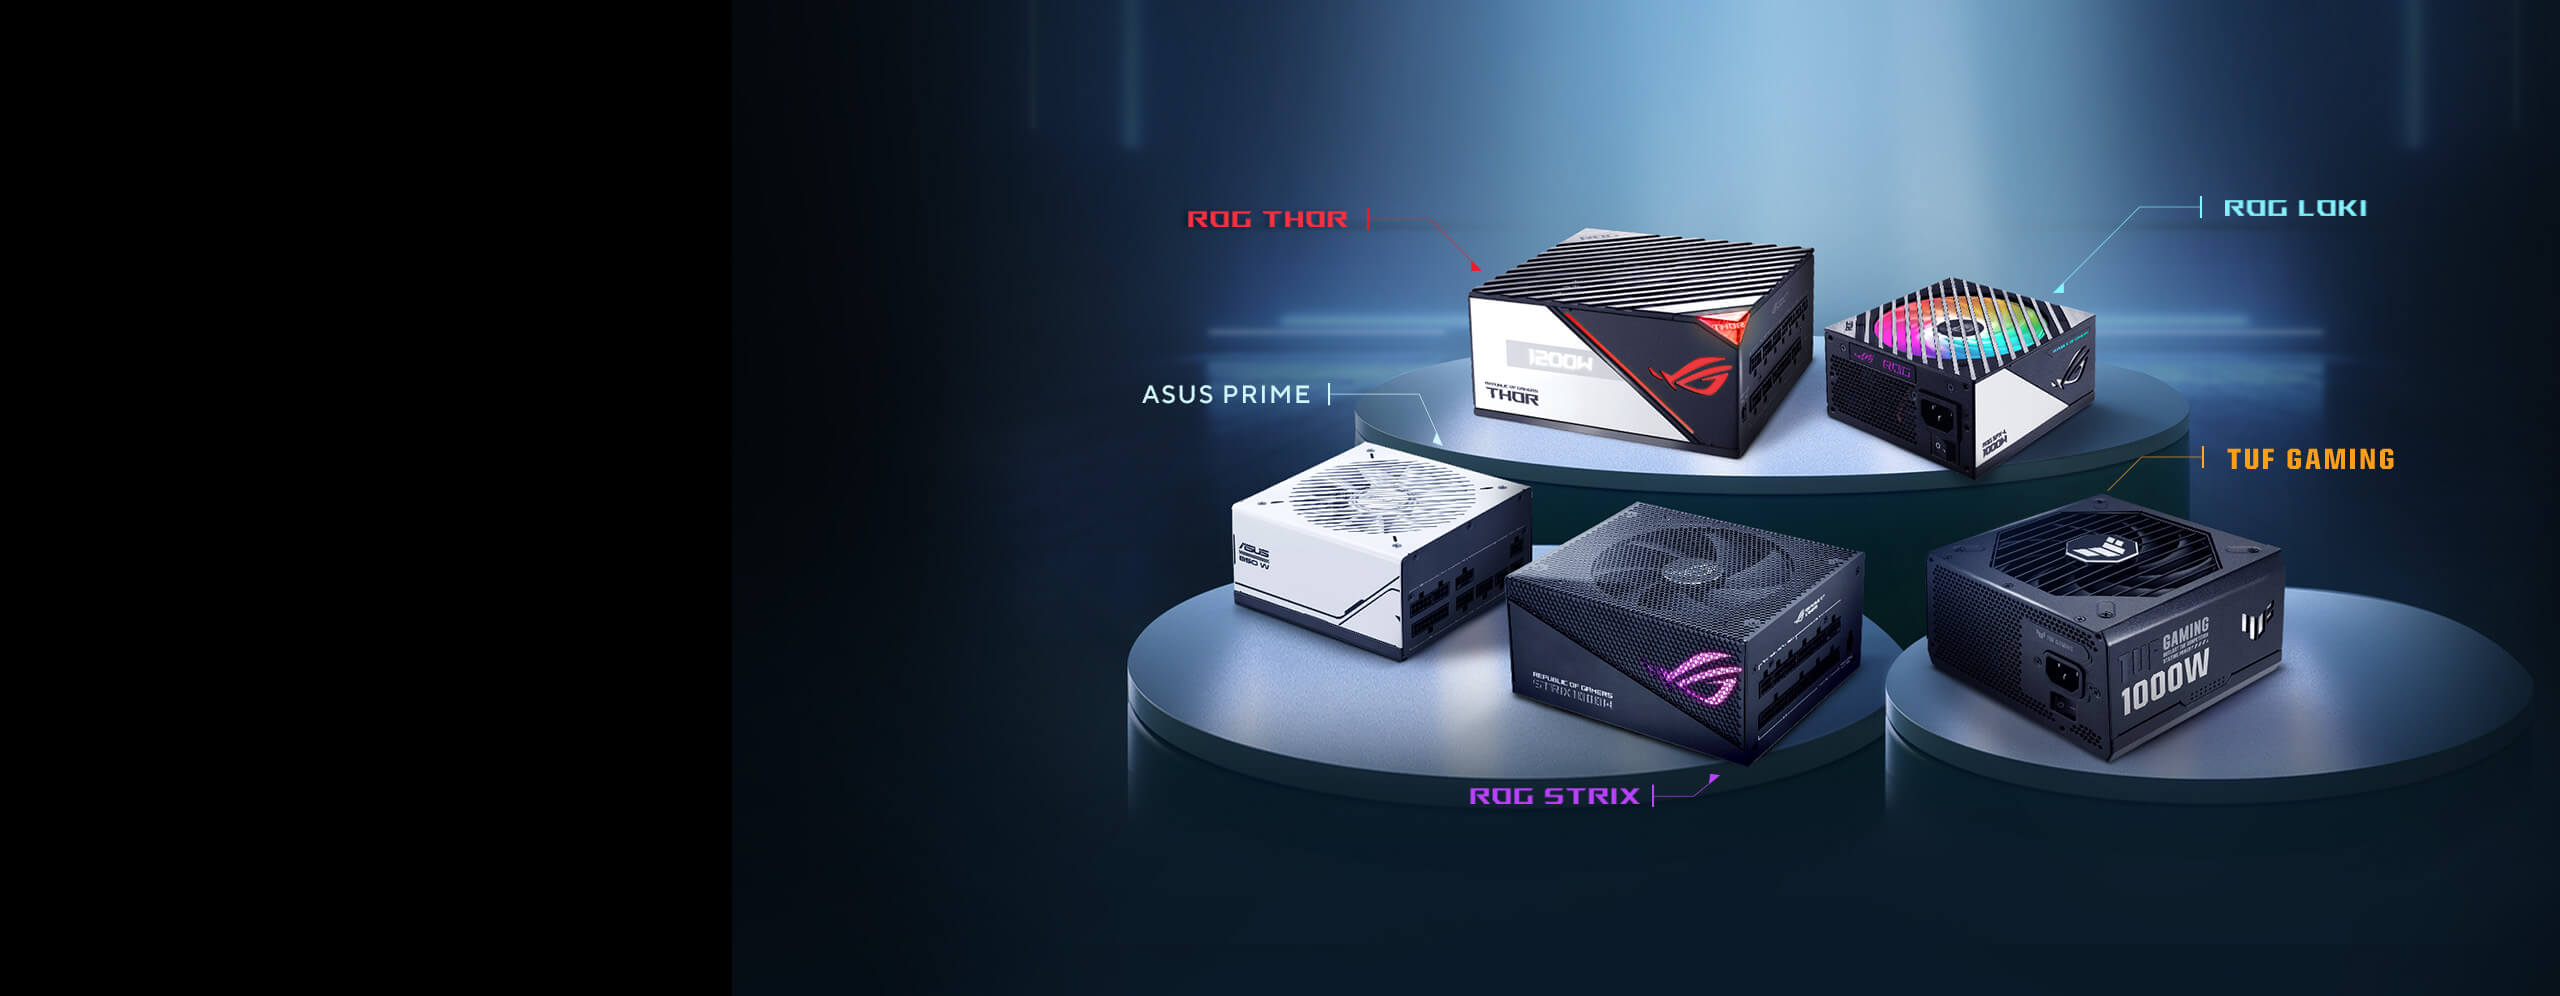 Aanbevolen voedingen voor de AMD Radeon RX 7900 GRE videokaart